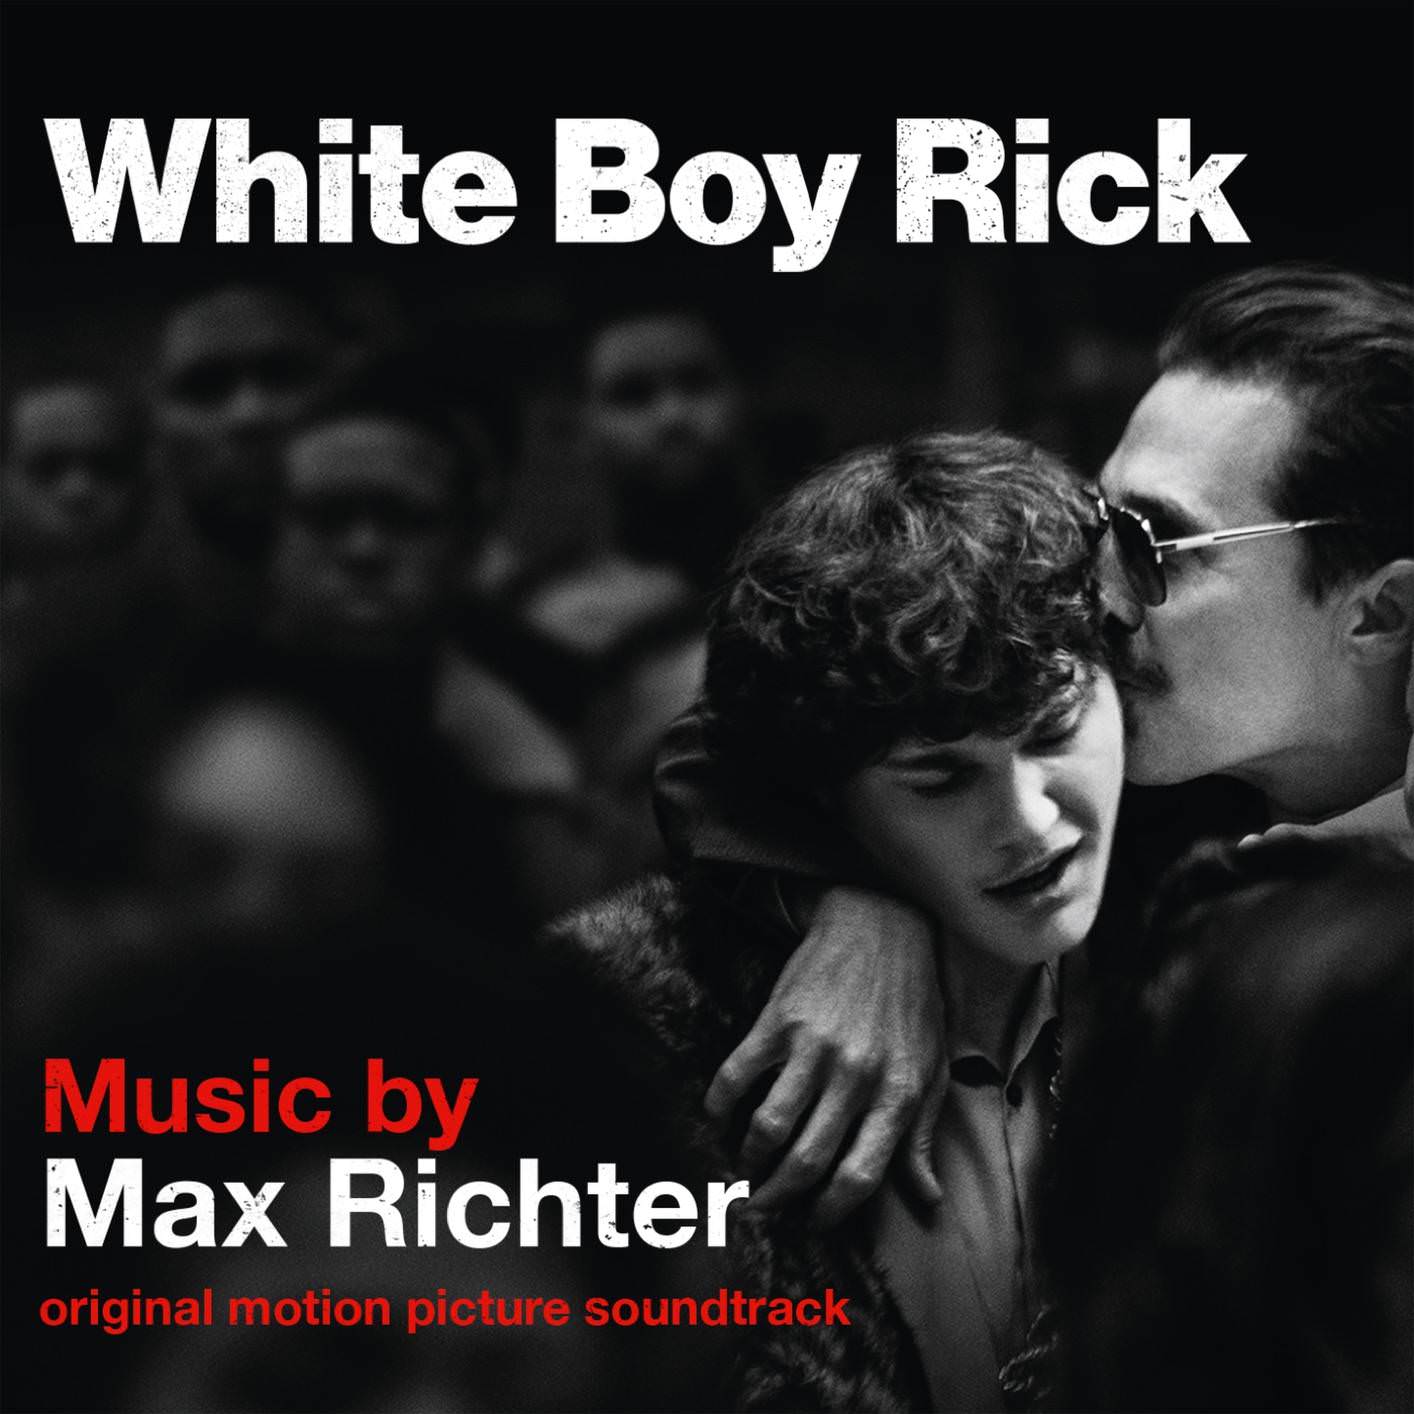 Max Richter – White Boy Rick (Original Motion Picture Soundtrack) (2018) [FLAC 24bit/48kHz]